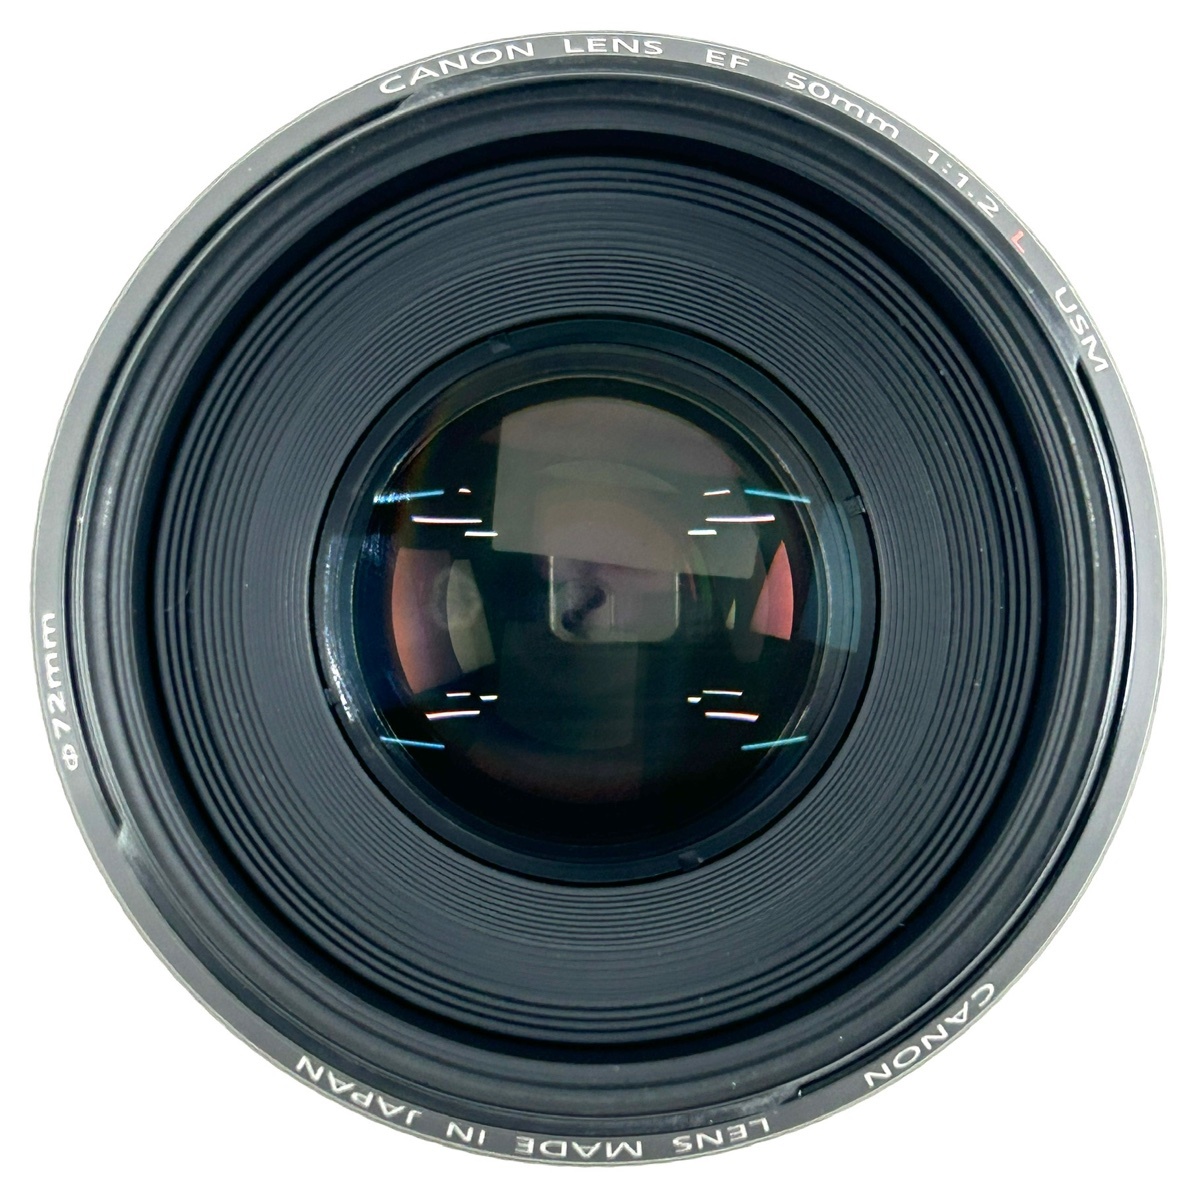 キヤノン Canon EOS 1Ds Mark III + EF 50mm F1.2L USM デジタル 一眼レフカメラ 【中古】_バイセル 31051_7